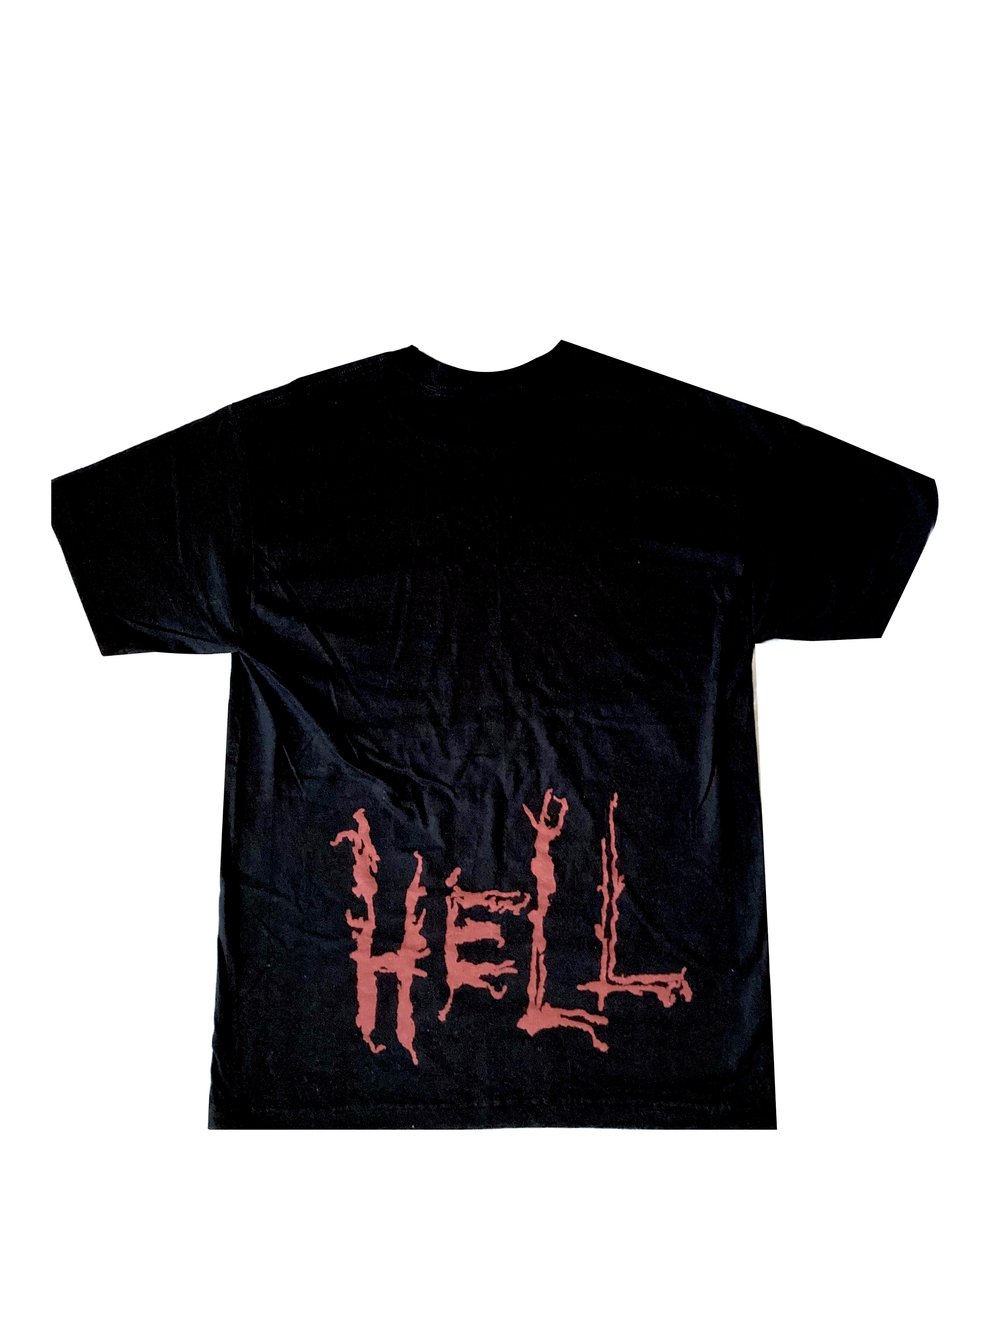 Hell Shirt "Charon"